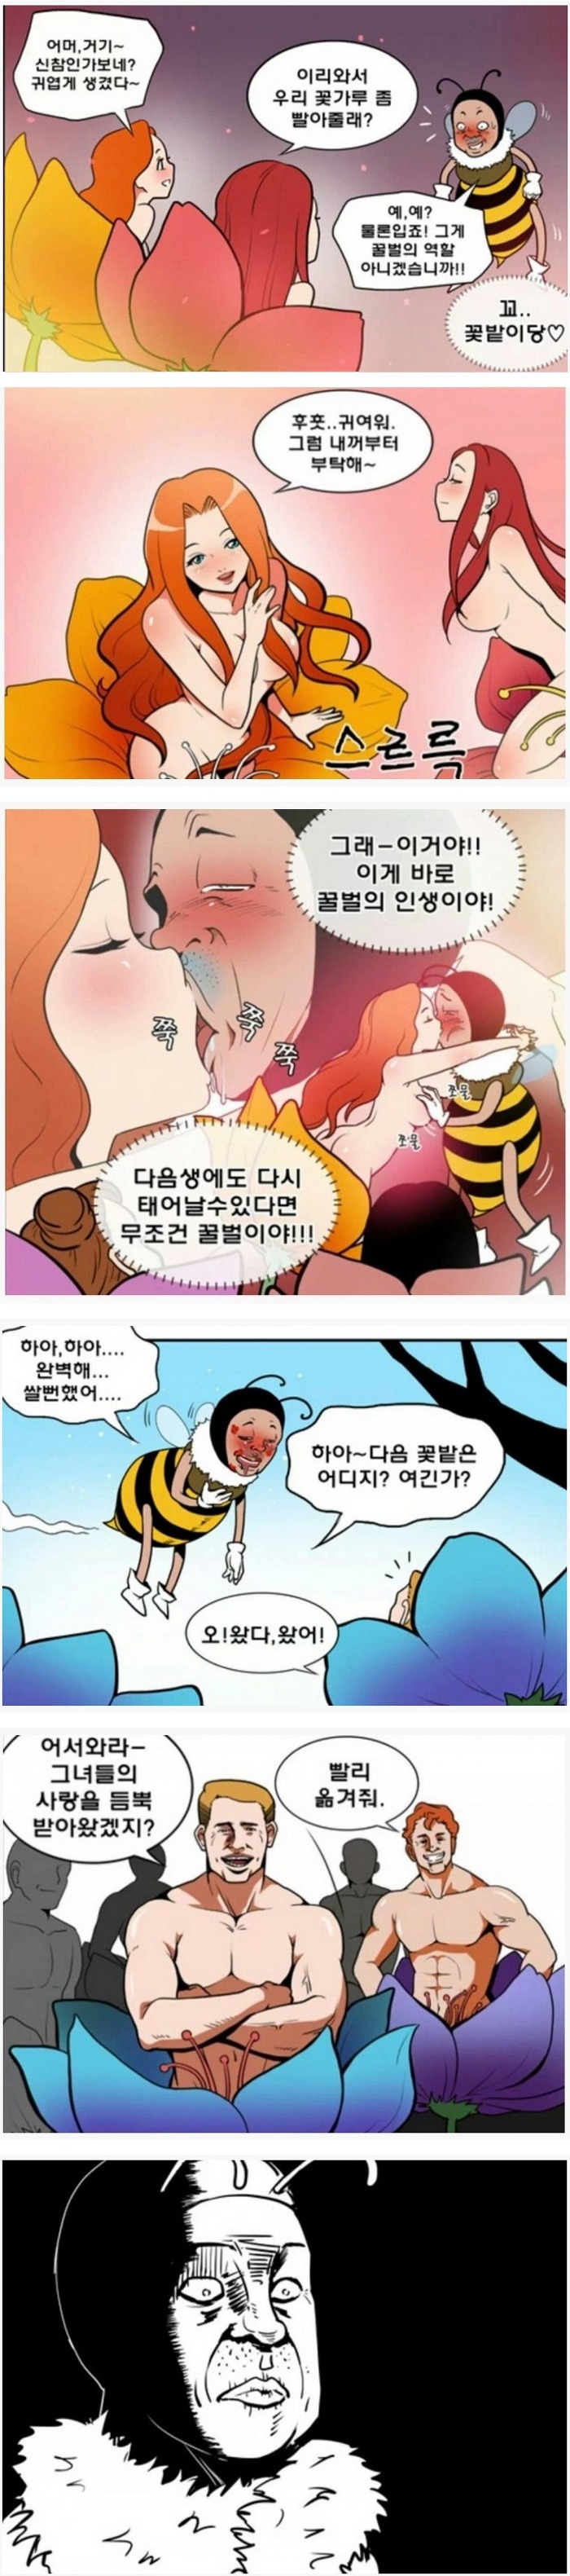 꿀벌의 비애